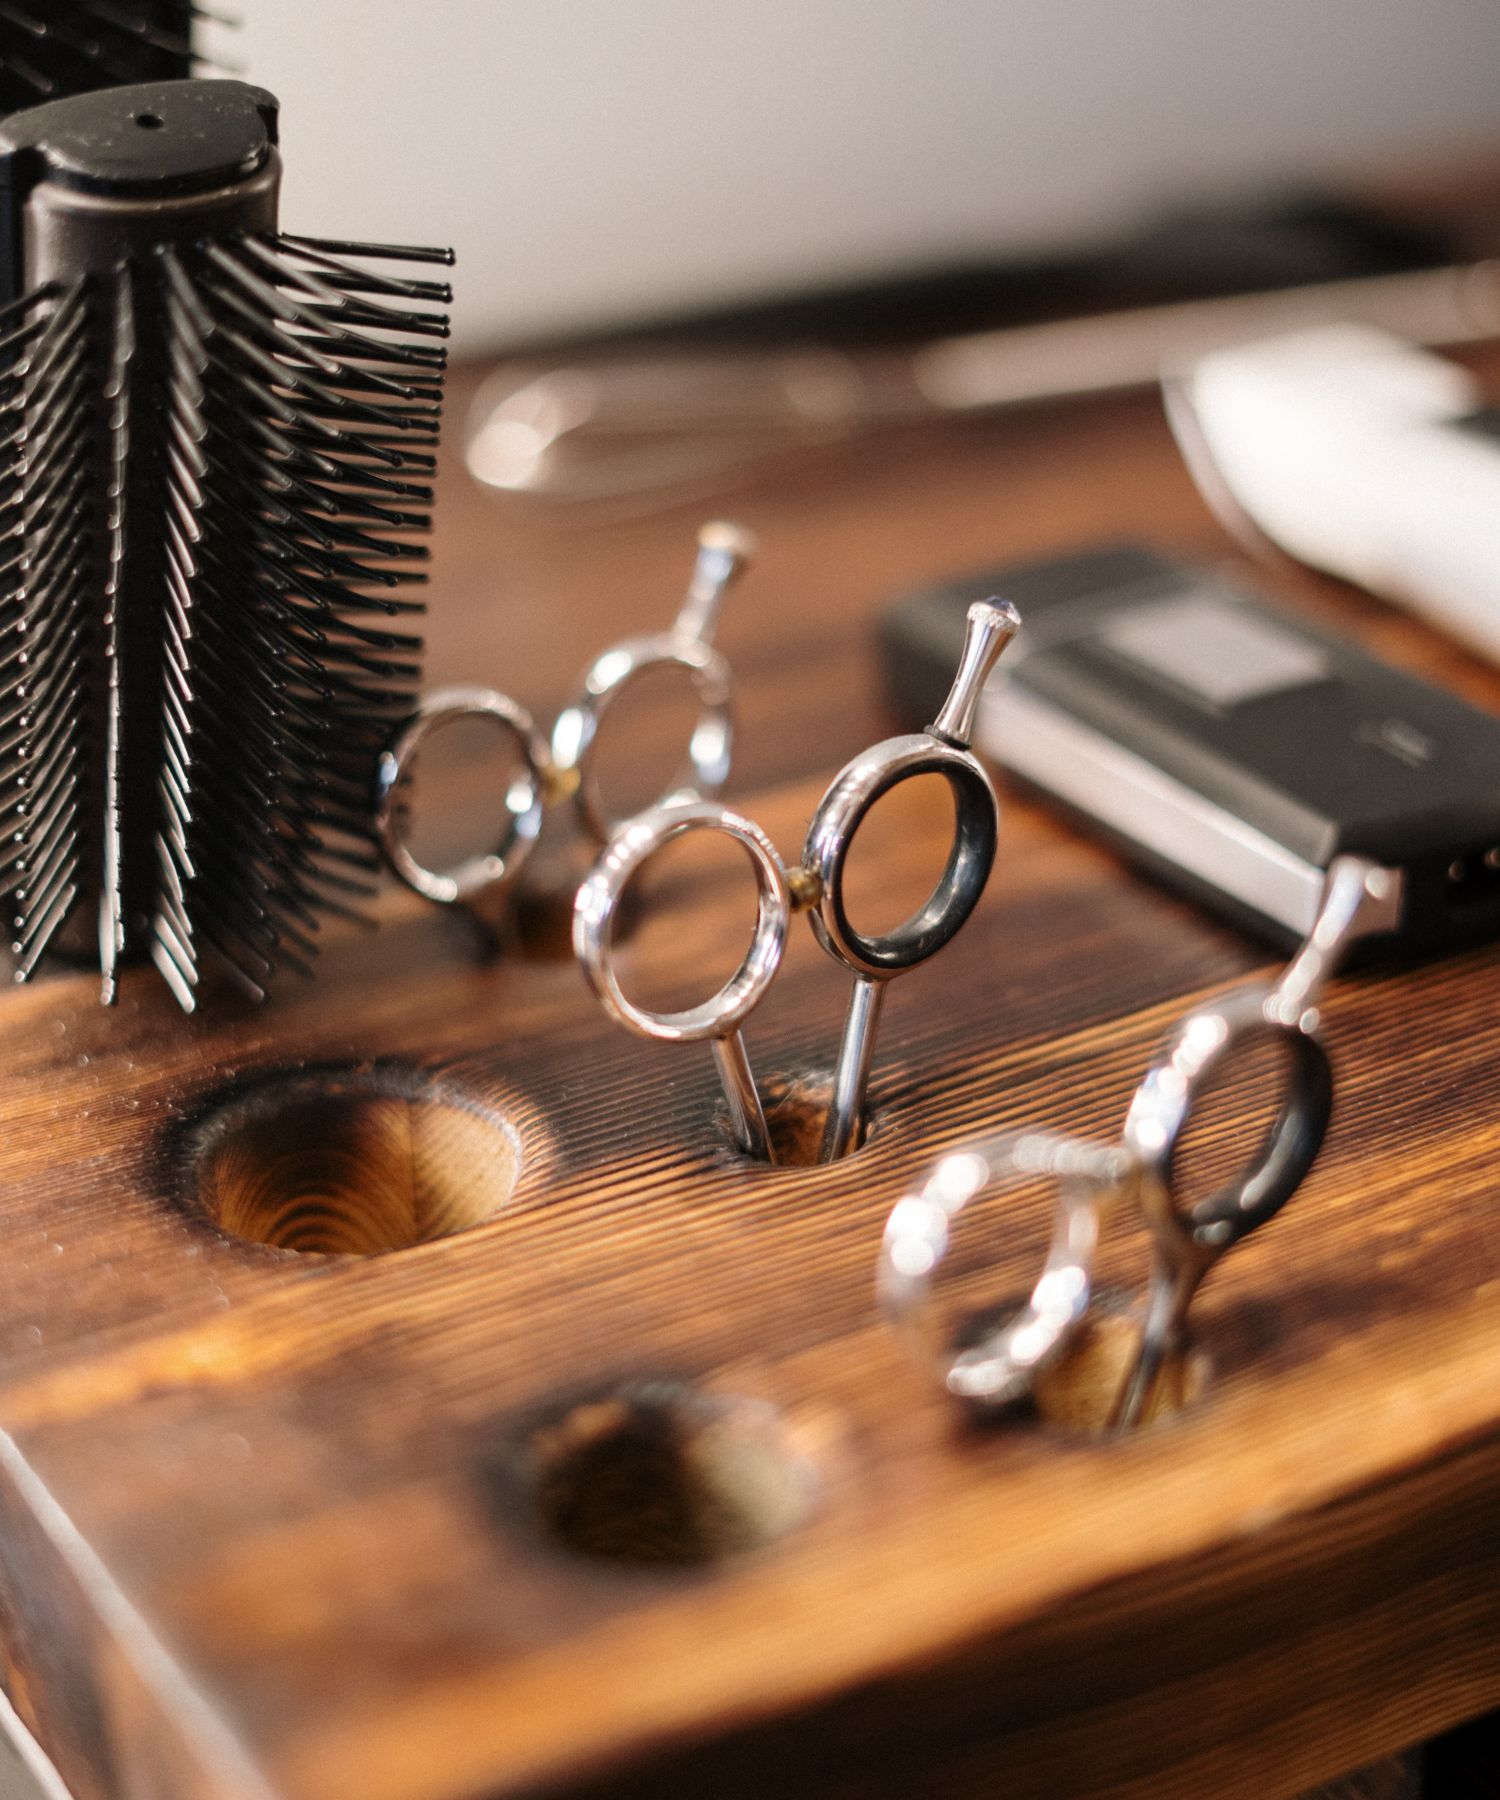 ferramentas e produtos de alta qualidade que atendem às demandas dos profissionais de cabelo e beleza. Projetada com o compromisso de elevar o padrão da sua arte